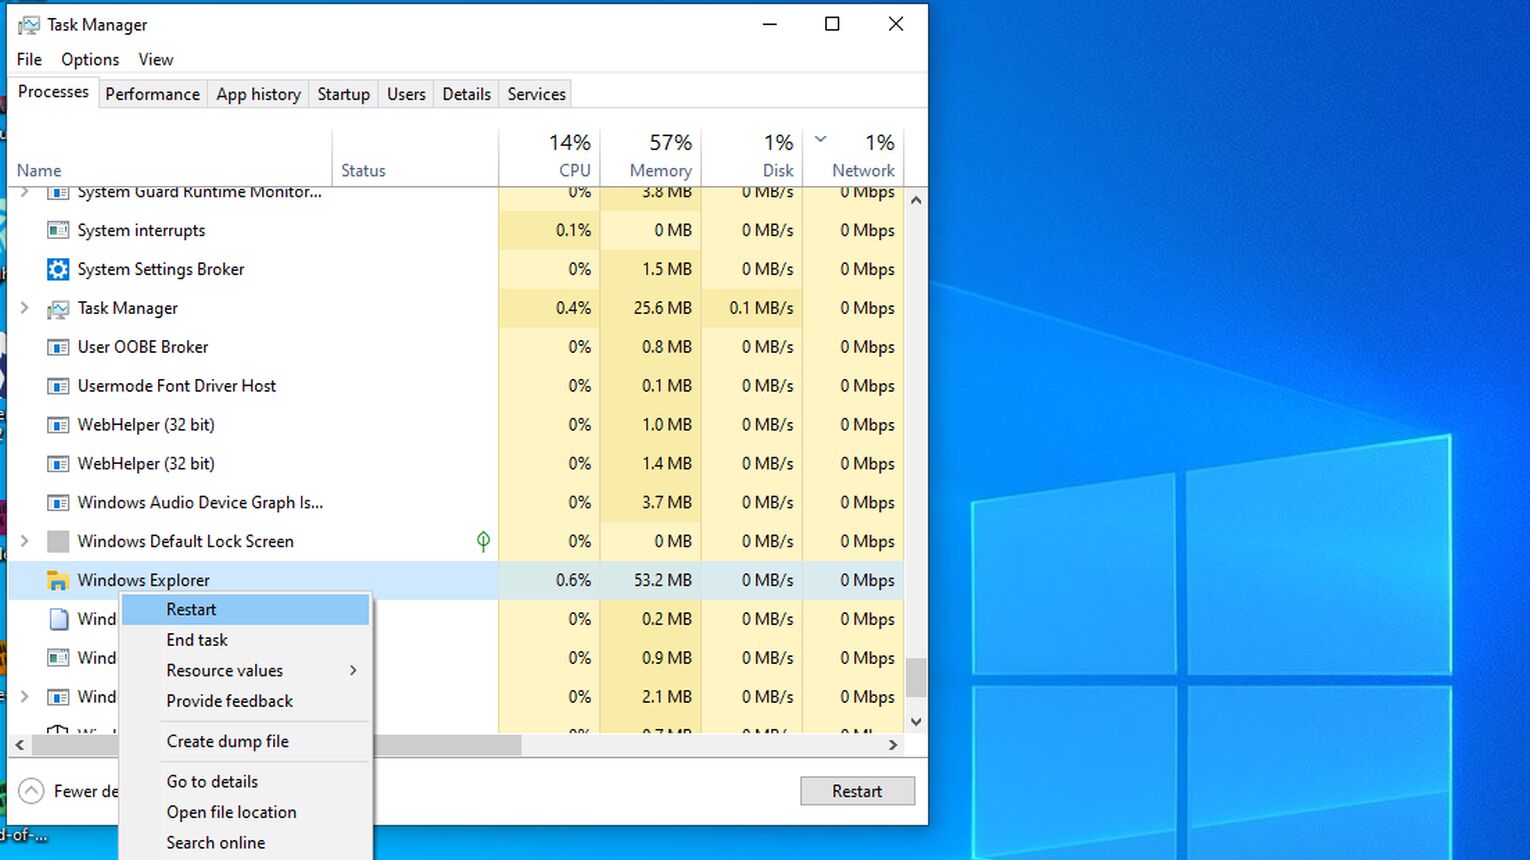 Windows Explorer Restart